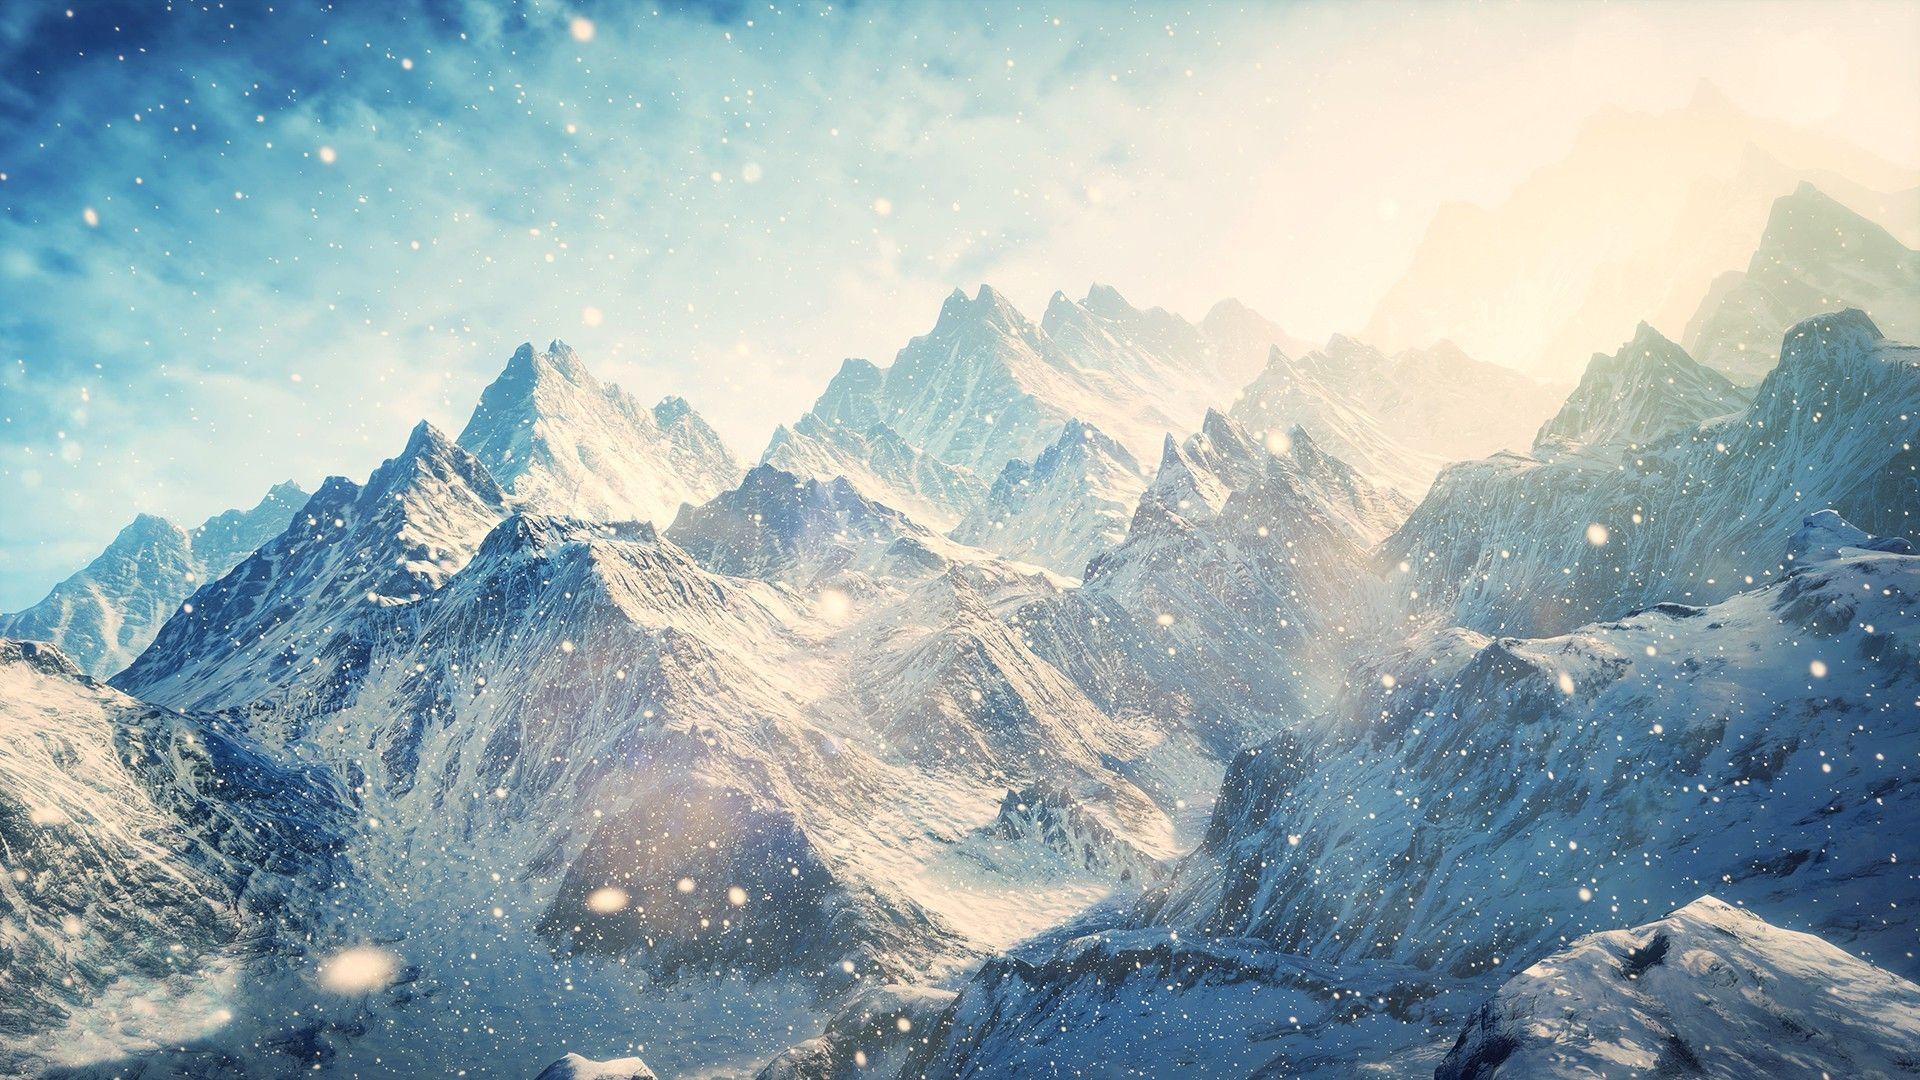 Snow Mountains Nature & Landscape desktop wallpaper. Mountain wallpaper, View wallpaper, Nature wallpaper